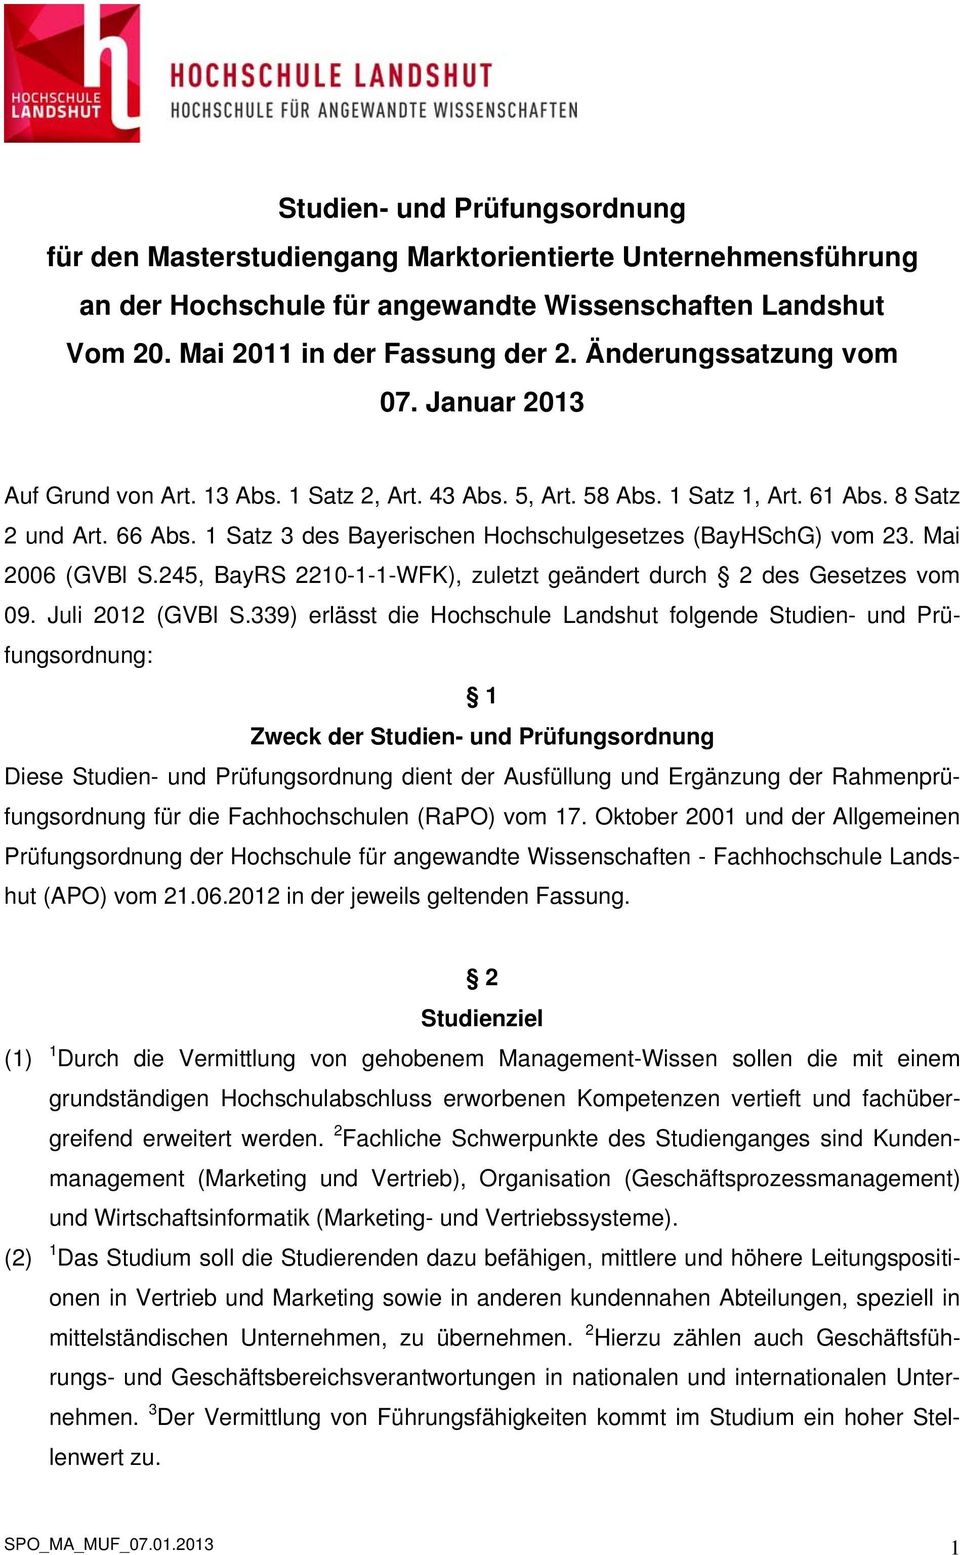 1 Satz 3 des Bayerischen Hochschulgesetzes (BayHSchG) vom 23. Mai 2006 (GVBl S.245, BayRS 2210-1-1-WFK), zuletzt geändert durch 2 des Gesetzes vom 09. Juli 2012 (GVBl S.